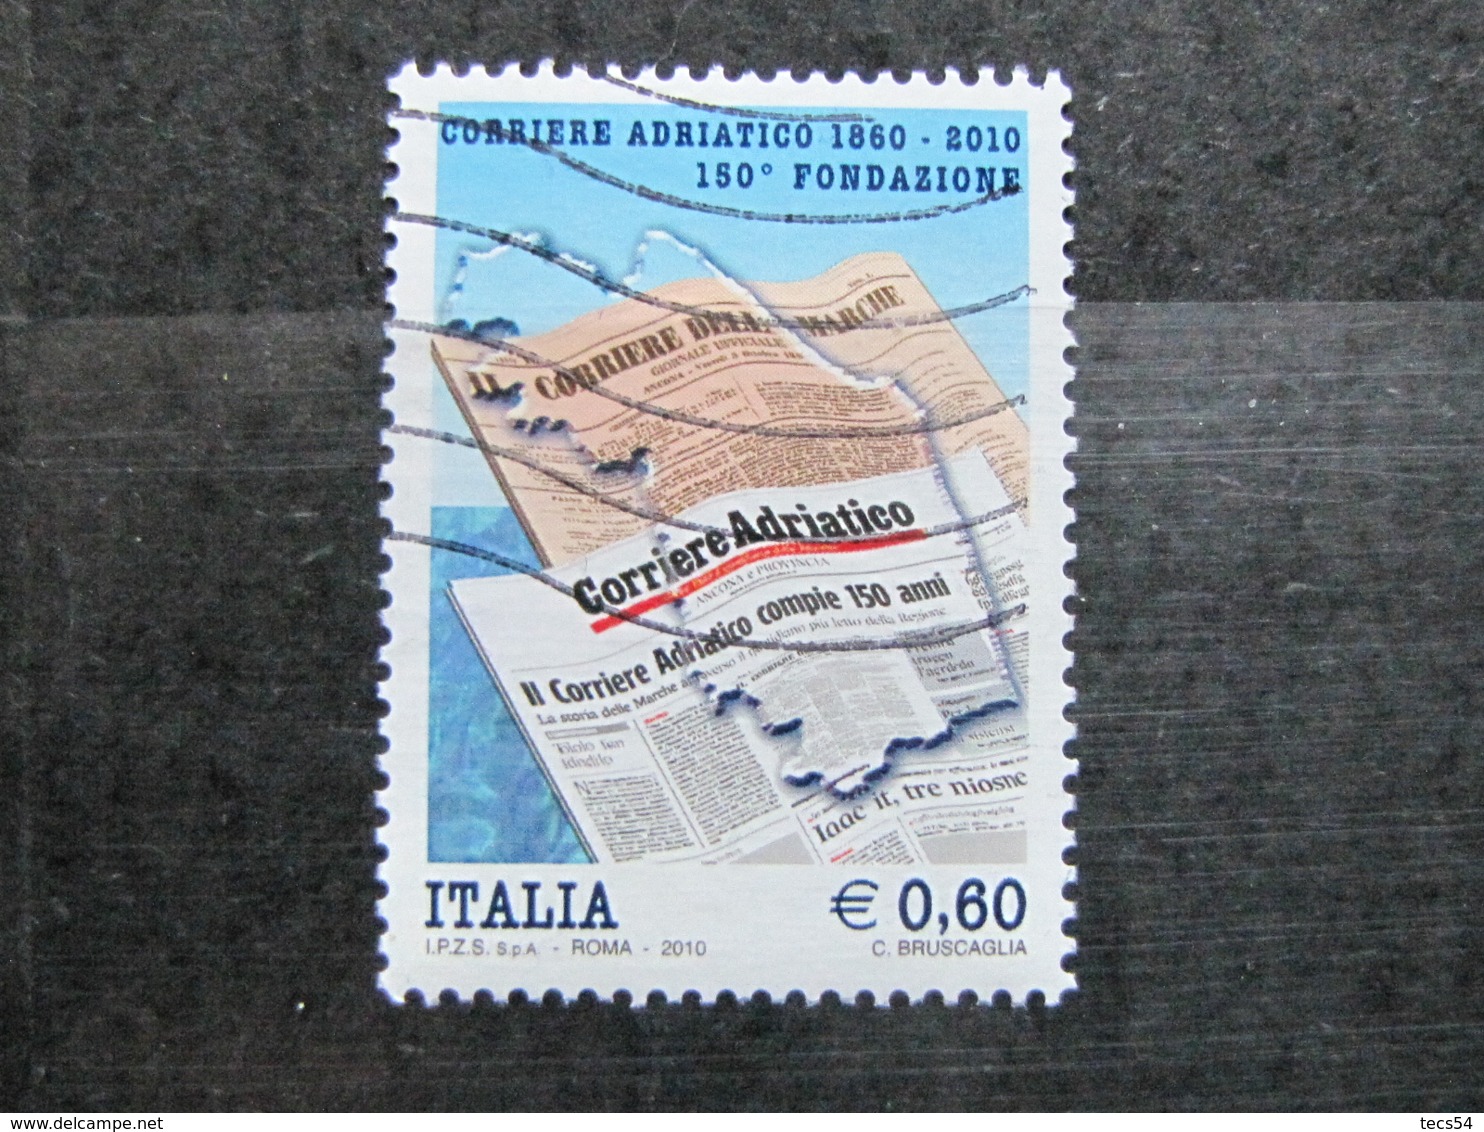 *ITALIA* USATO 2010 - 150° CORRIERE ADRIATICO - SASSONE 3196 - LUSSO/FIOR DI STAMPA - 2001-10: Usati